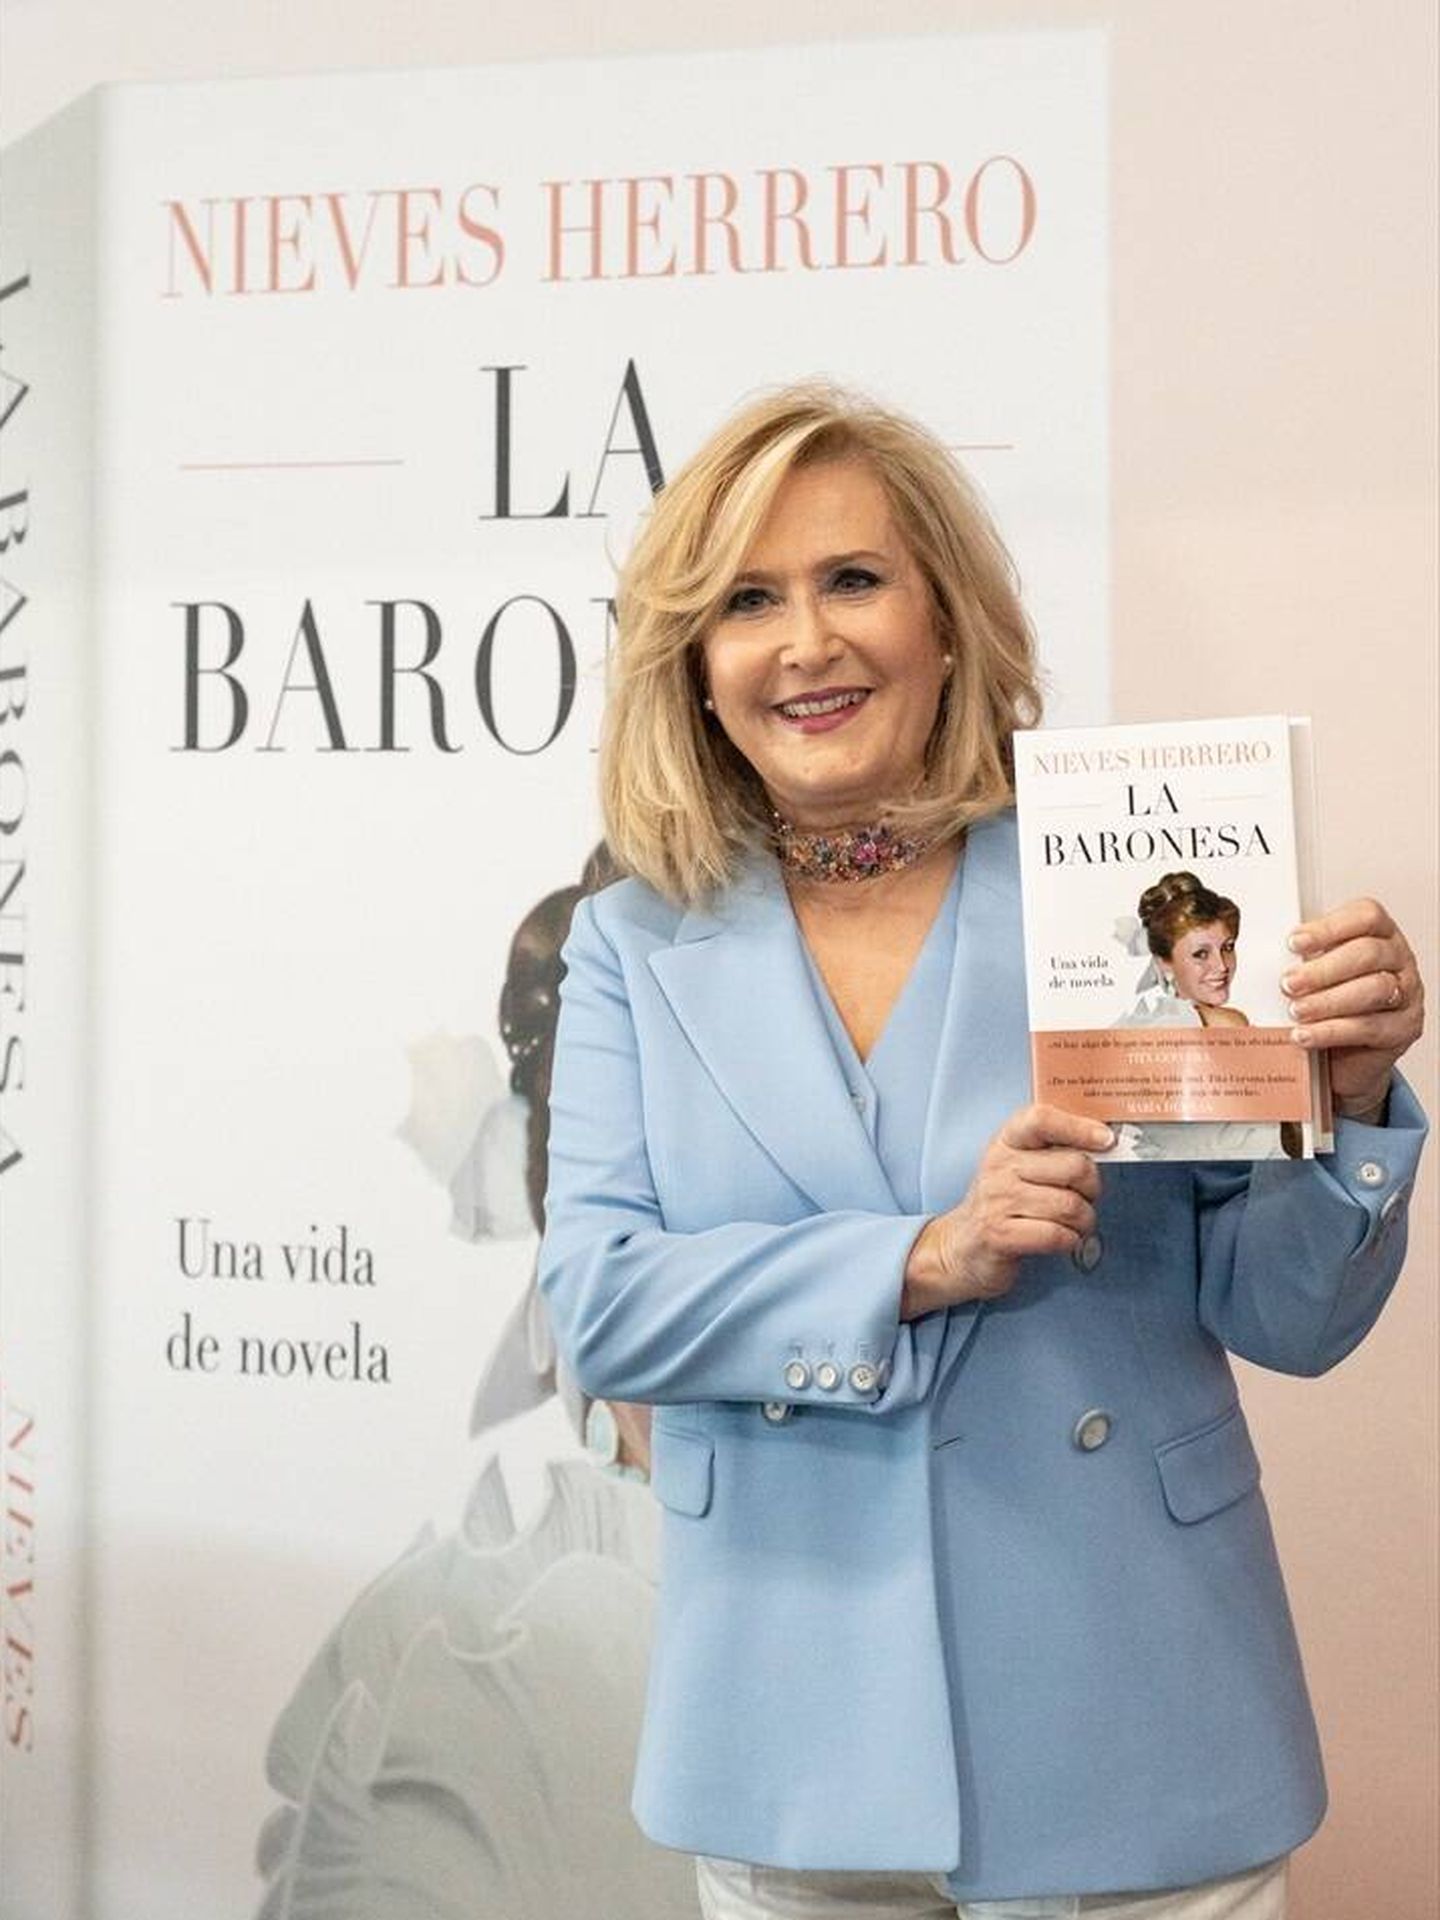 Nieves Herrero, durante la presentación de su libro sobre la baronesa. (Europa Press)